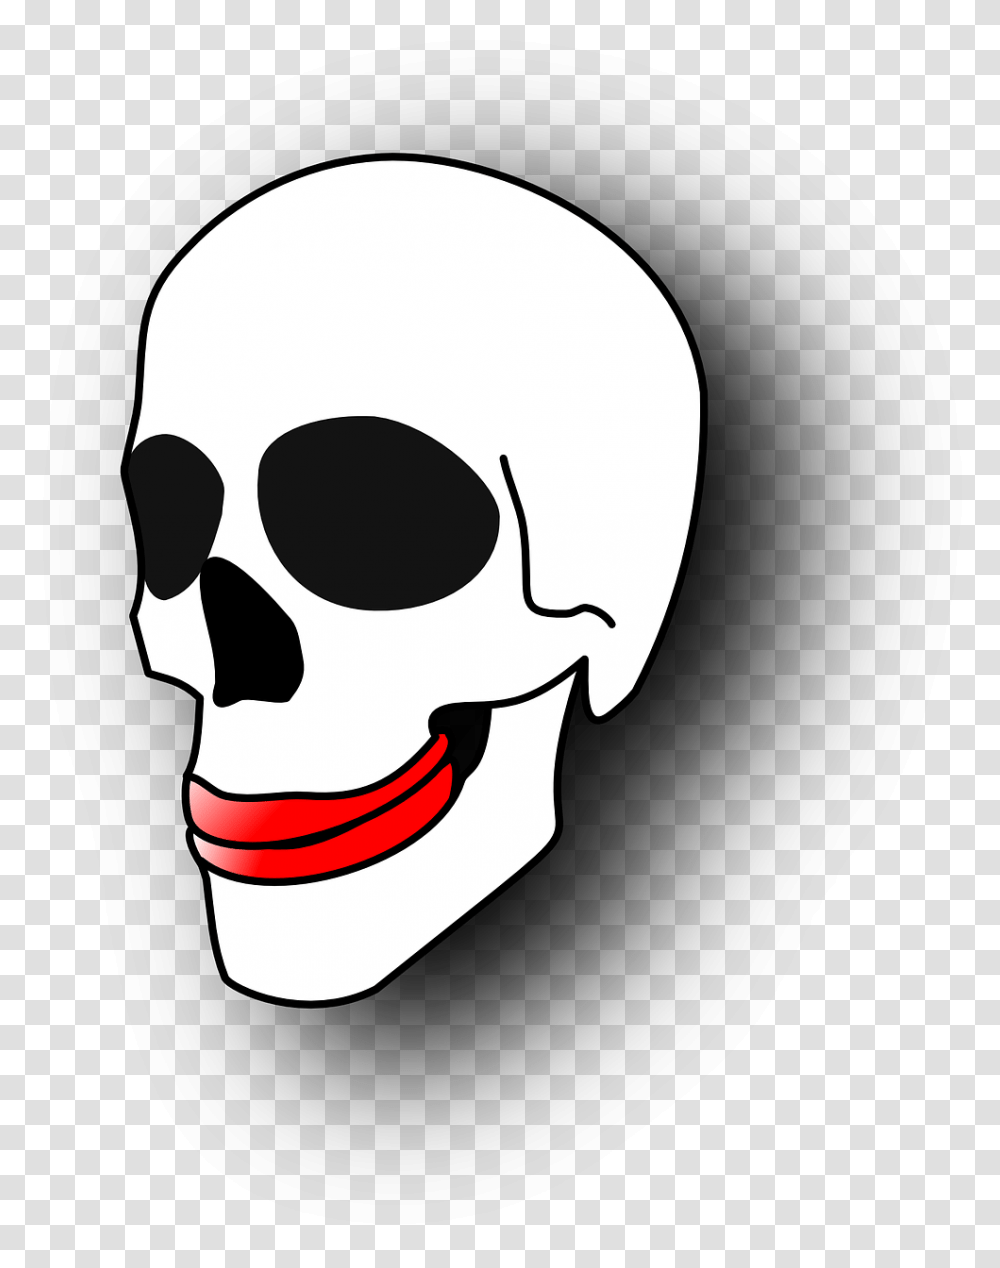 Skull Gums Skeleton Free Photo Skull Clipart, Apparel, Helmet, Mask Transparent Png